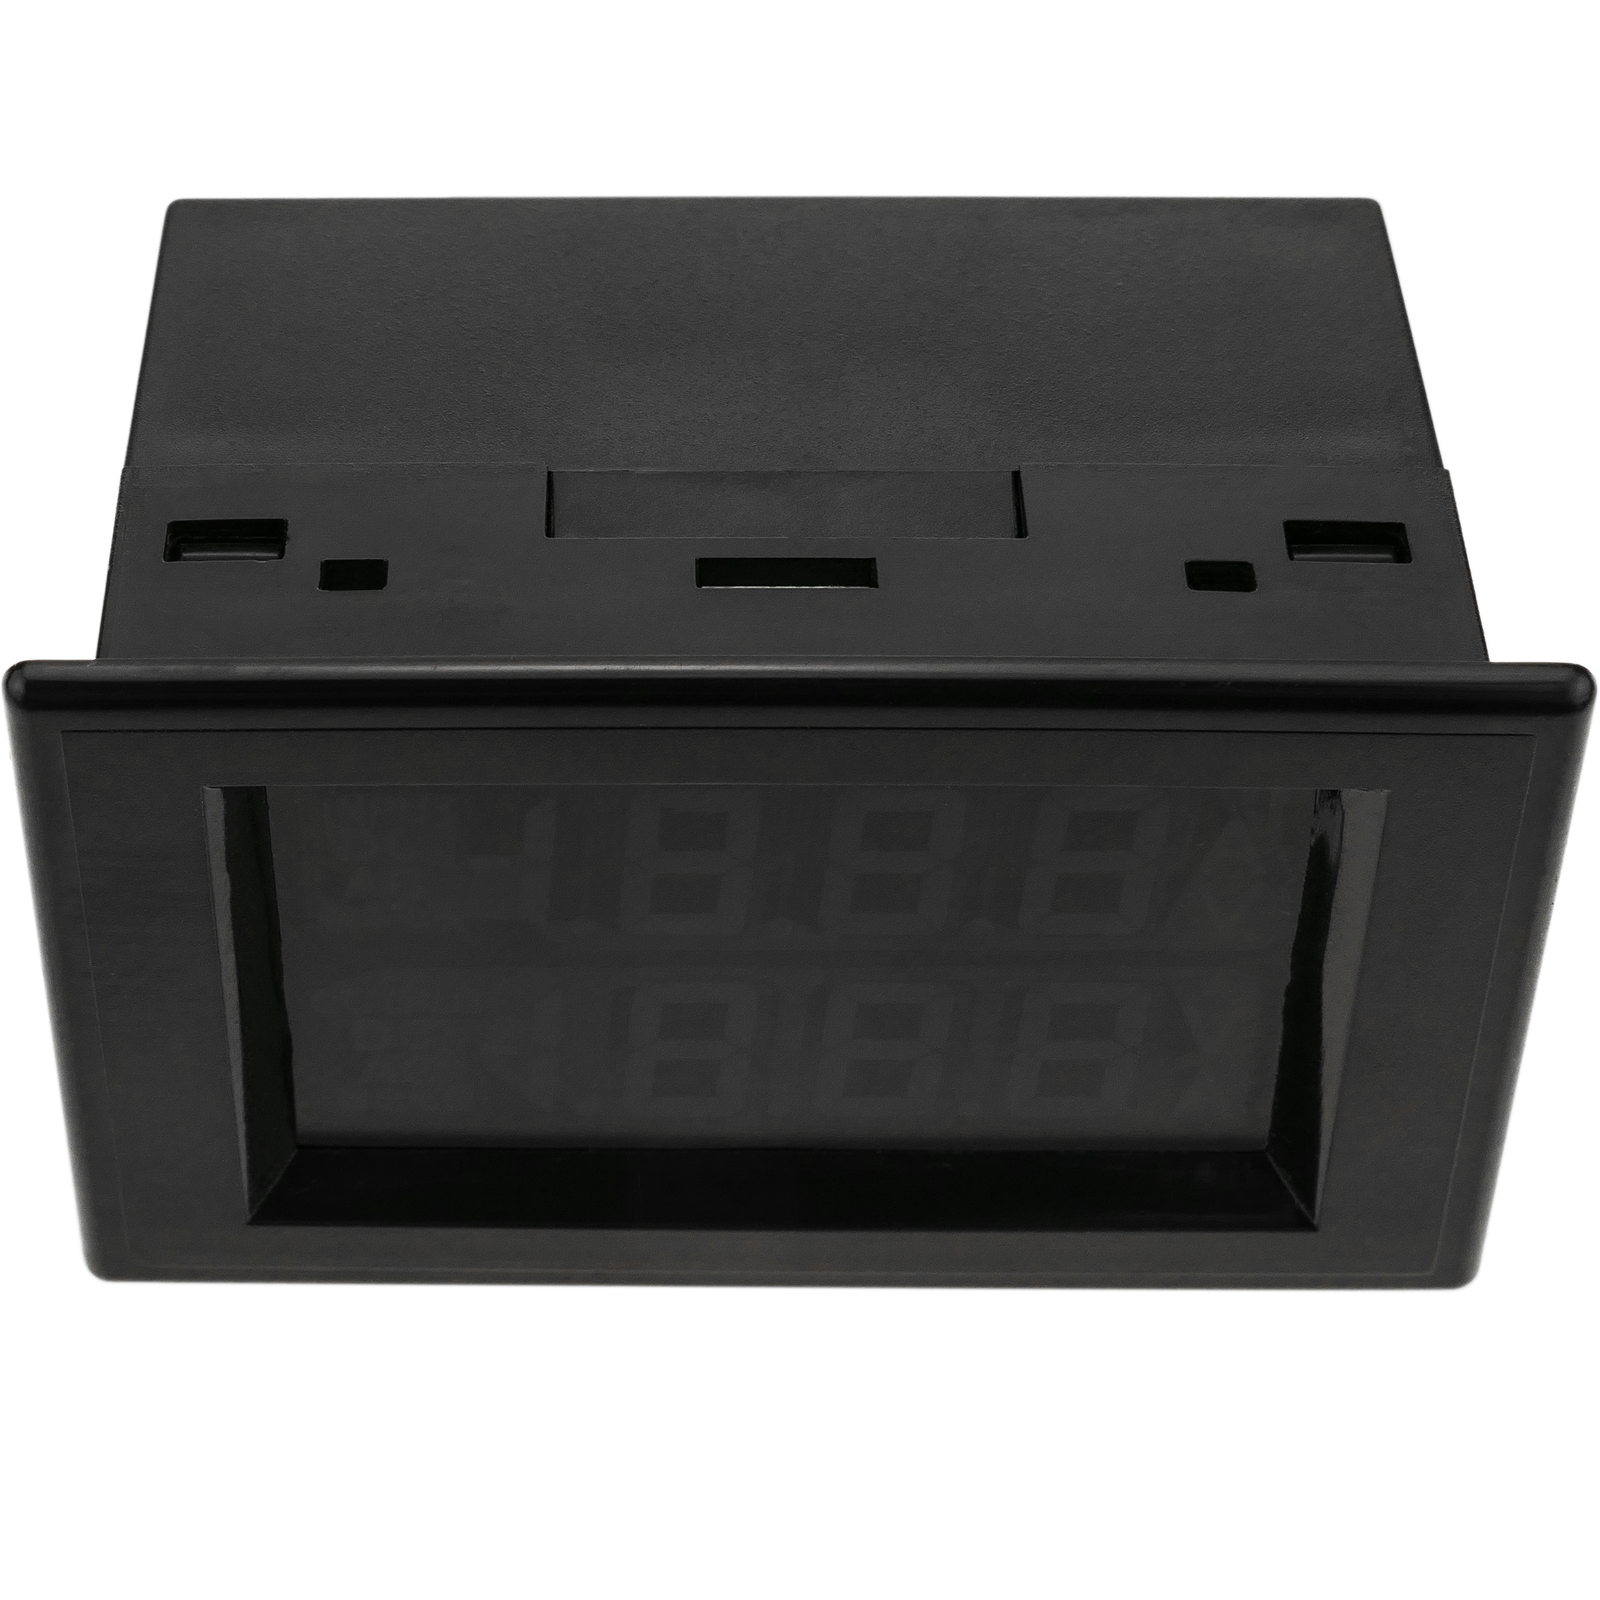 Affichage LCD à 3 chiffres double avec voltmètre 80-300VAC et ampèremètre  100-200A rétro-éclairé - Cablematic